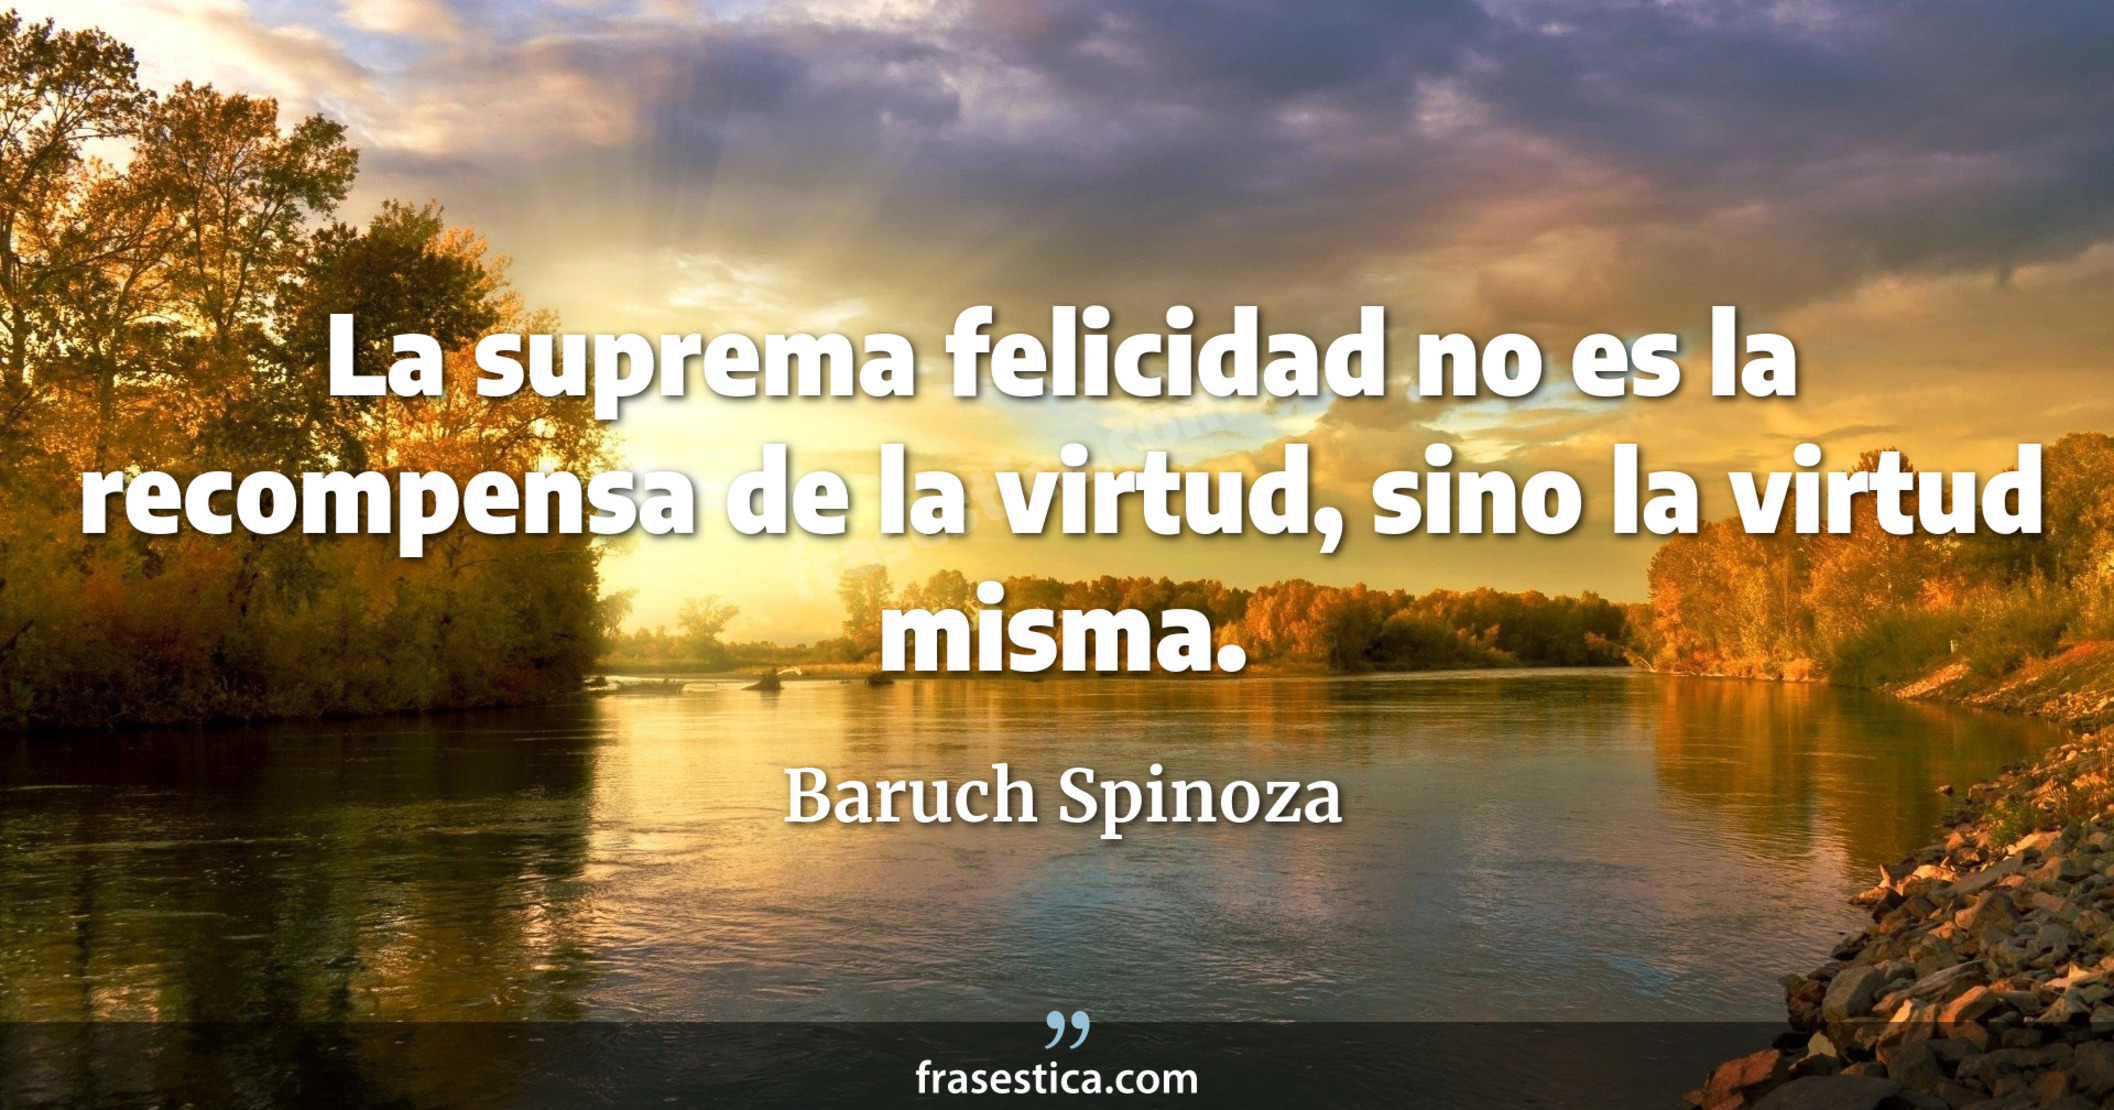 La suprema felicidad no es la recompensa de la virtud, sino la virtud misma. - Baruch Spinoza